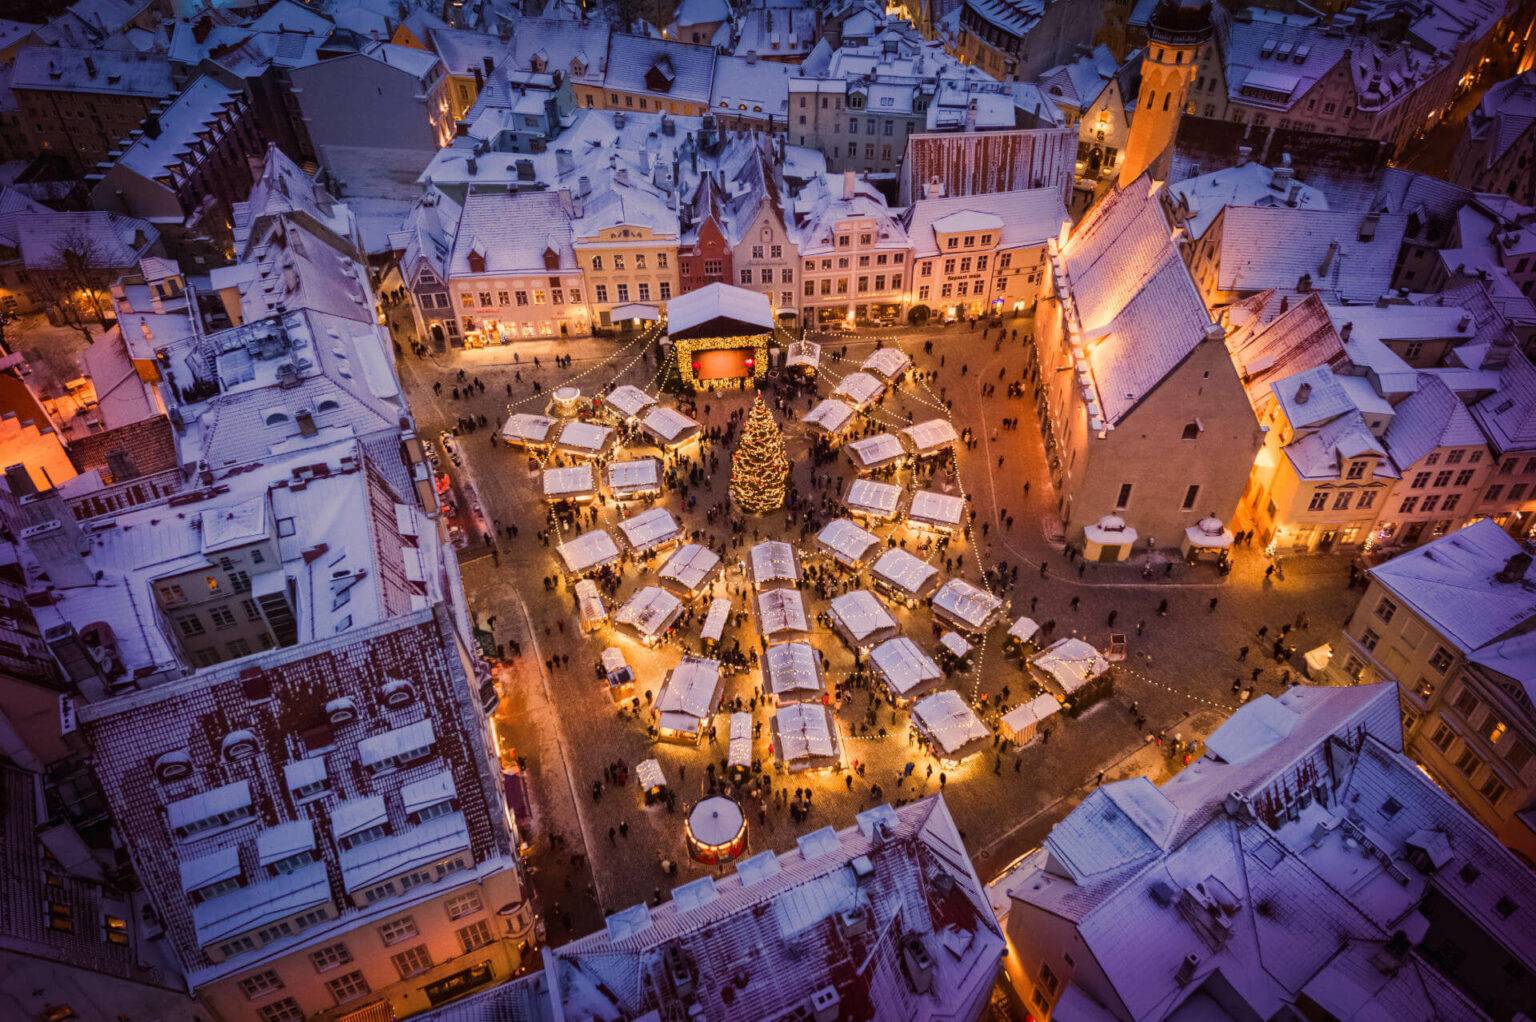 Der Weihnachtsmarkt in Tallinn ist meistens von einer Schneeschicht bedeckt, was die Weihnachtsstimmung perfekt macht.